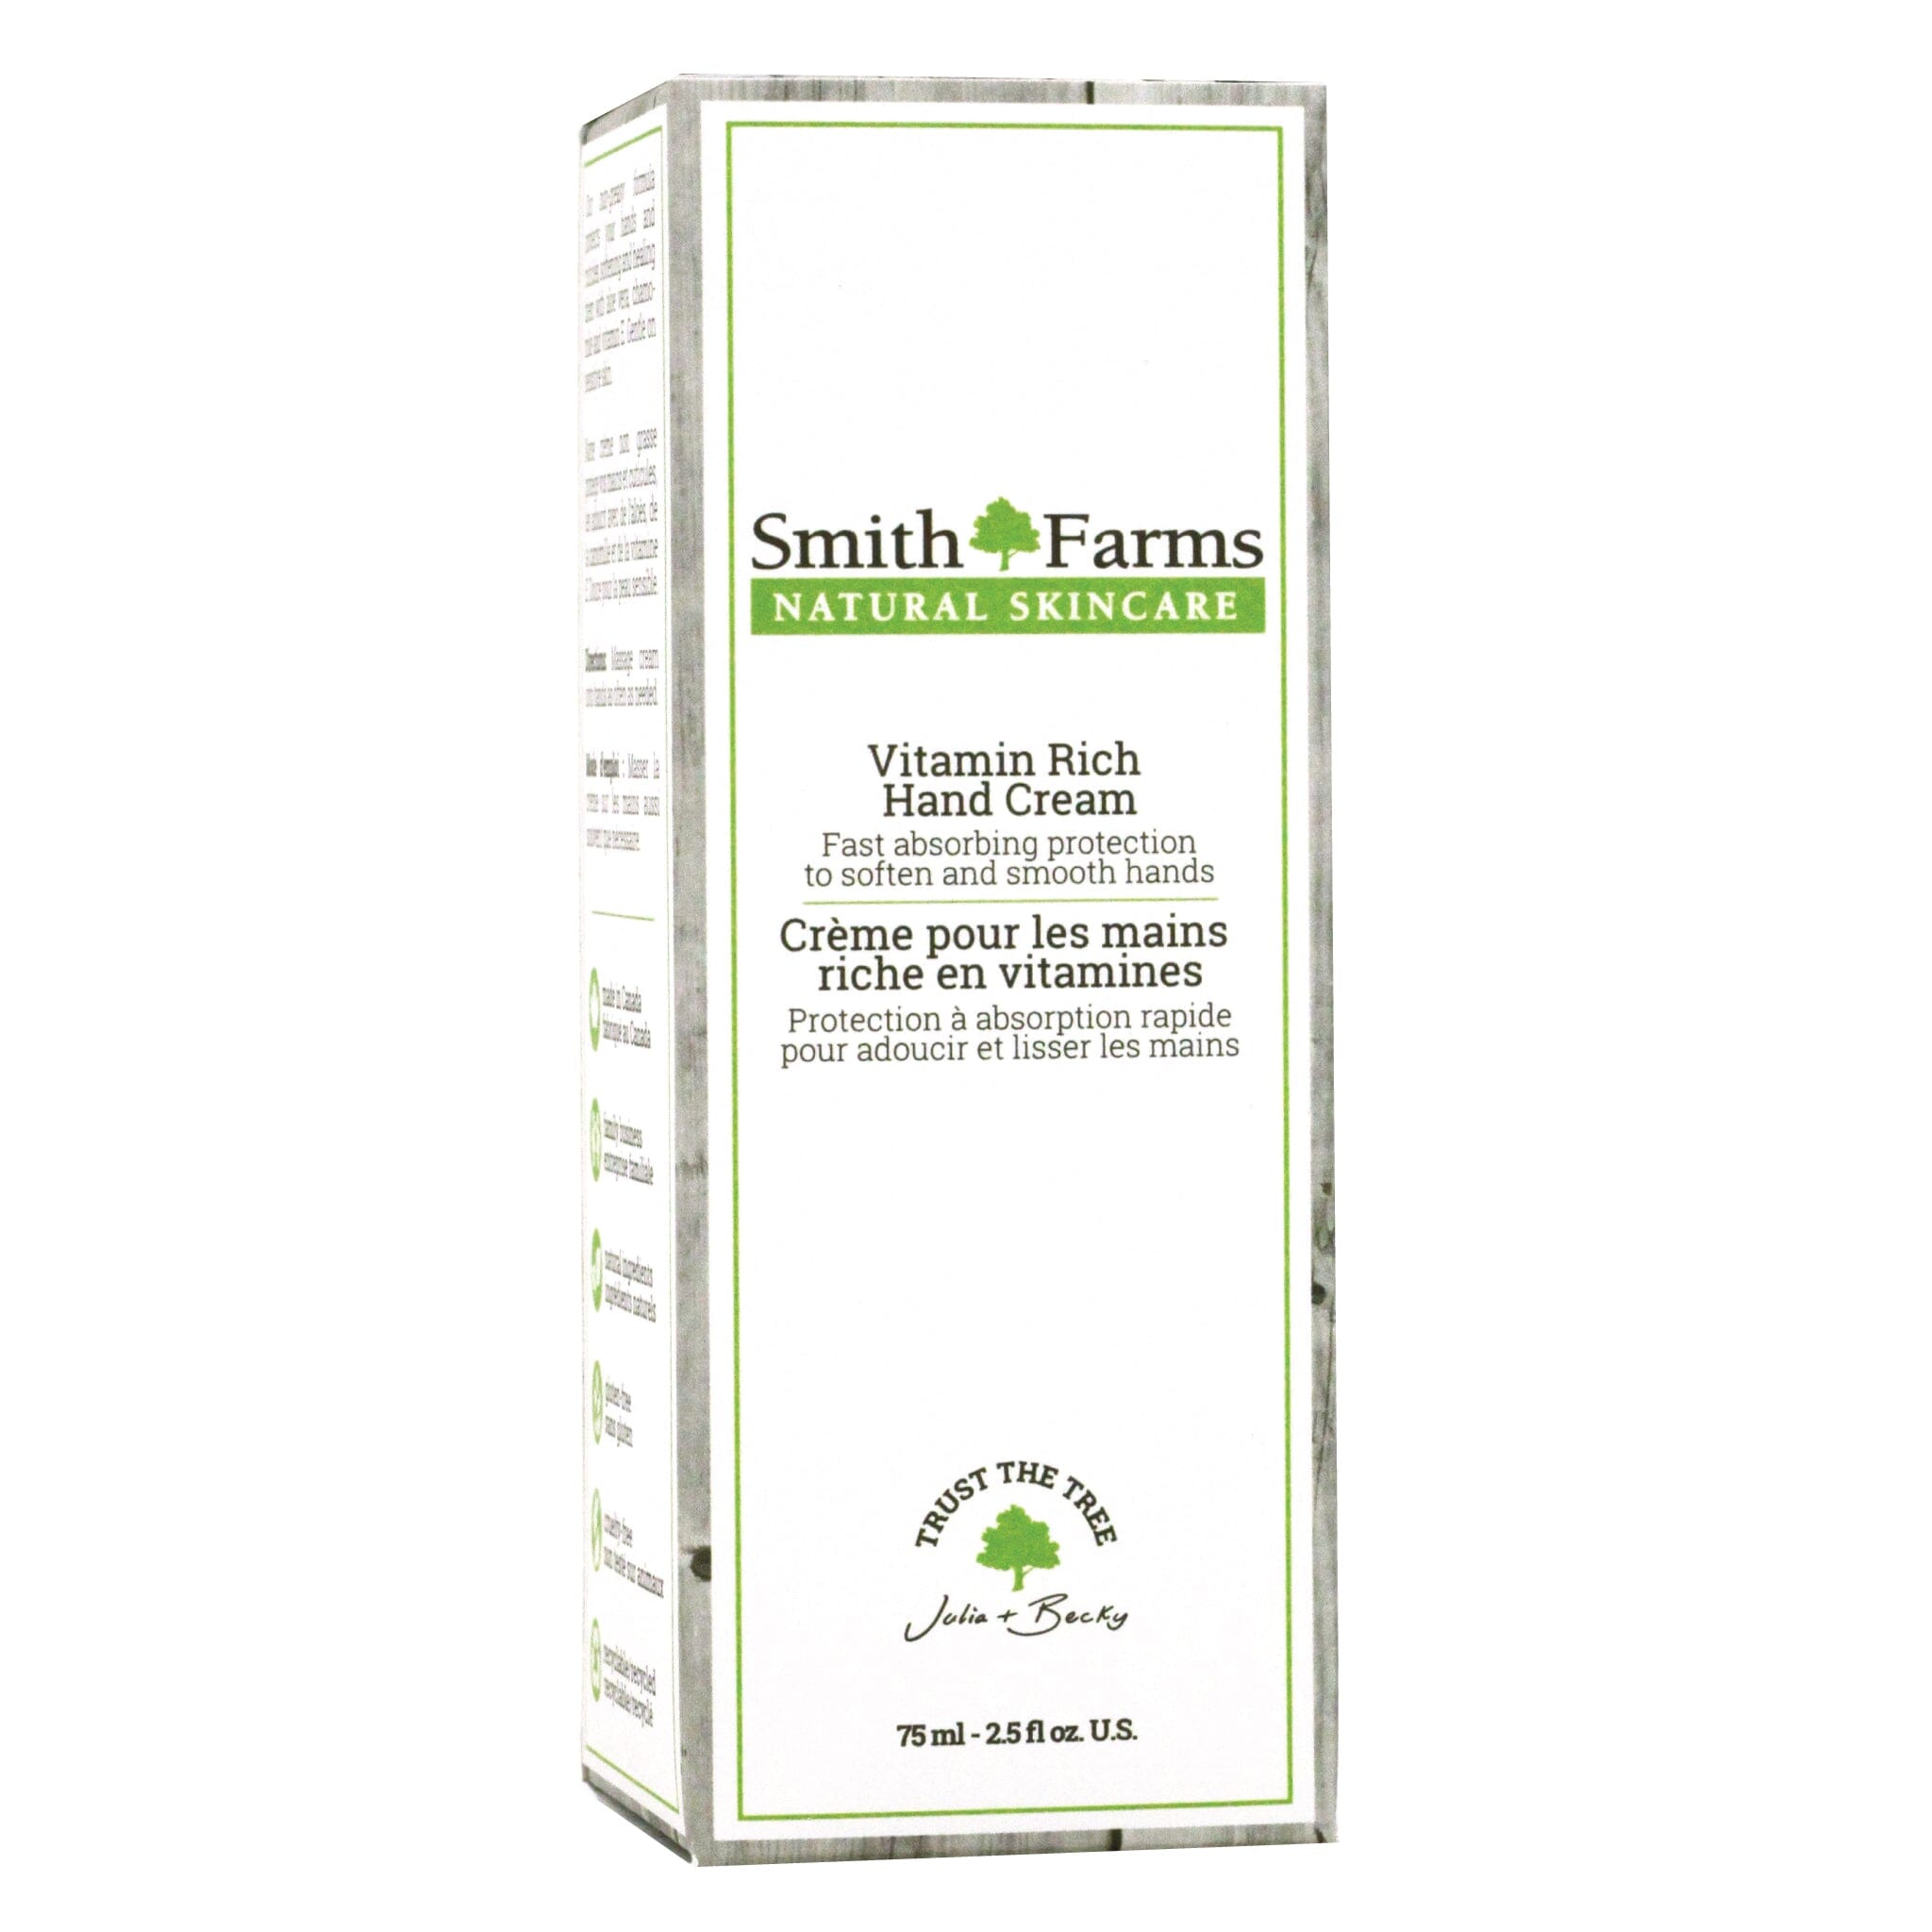 Smith Farms - Vitamin Rich Hand Cream - Box Front Angle